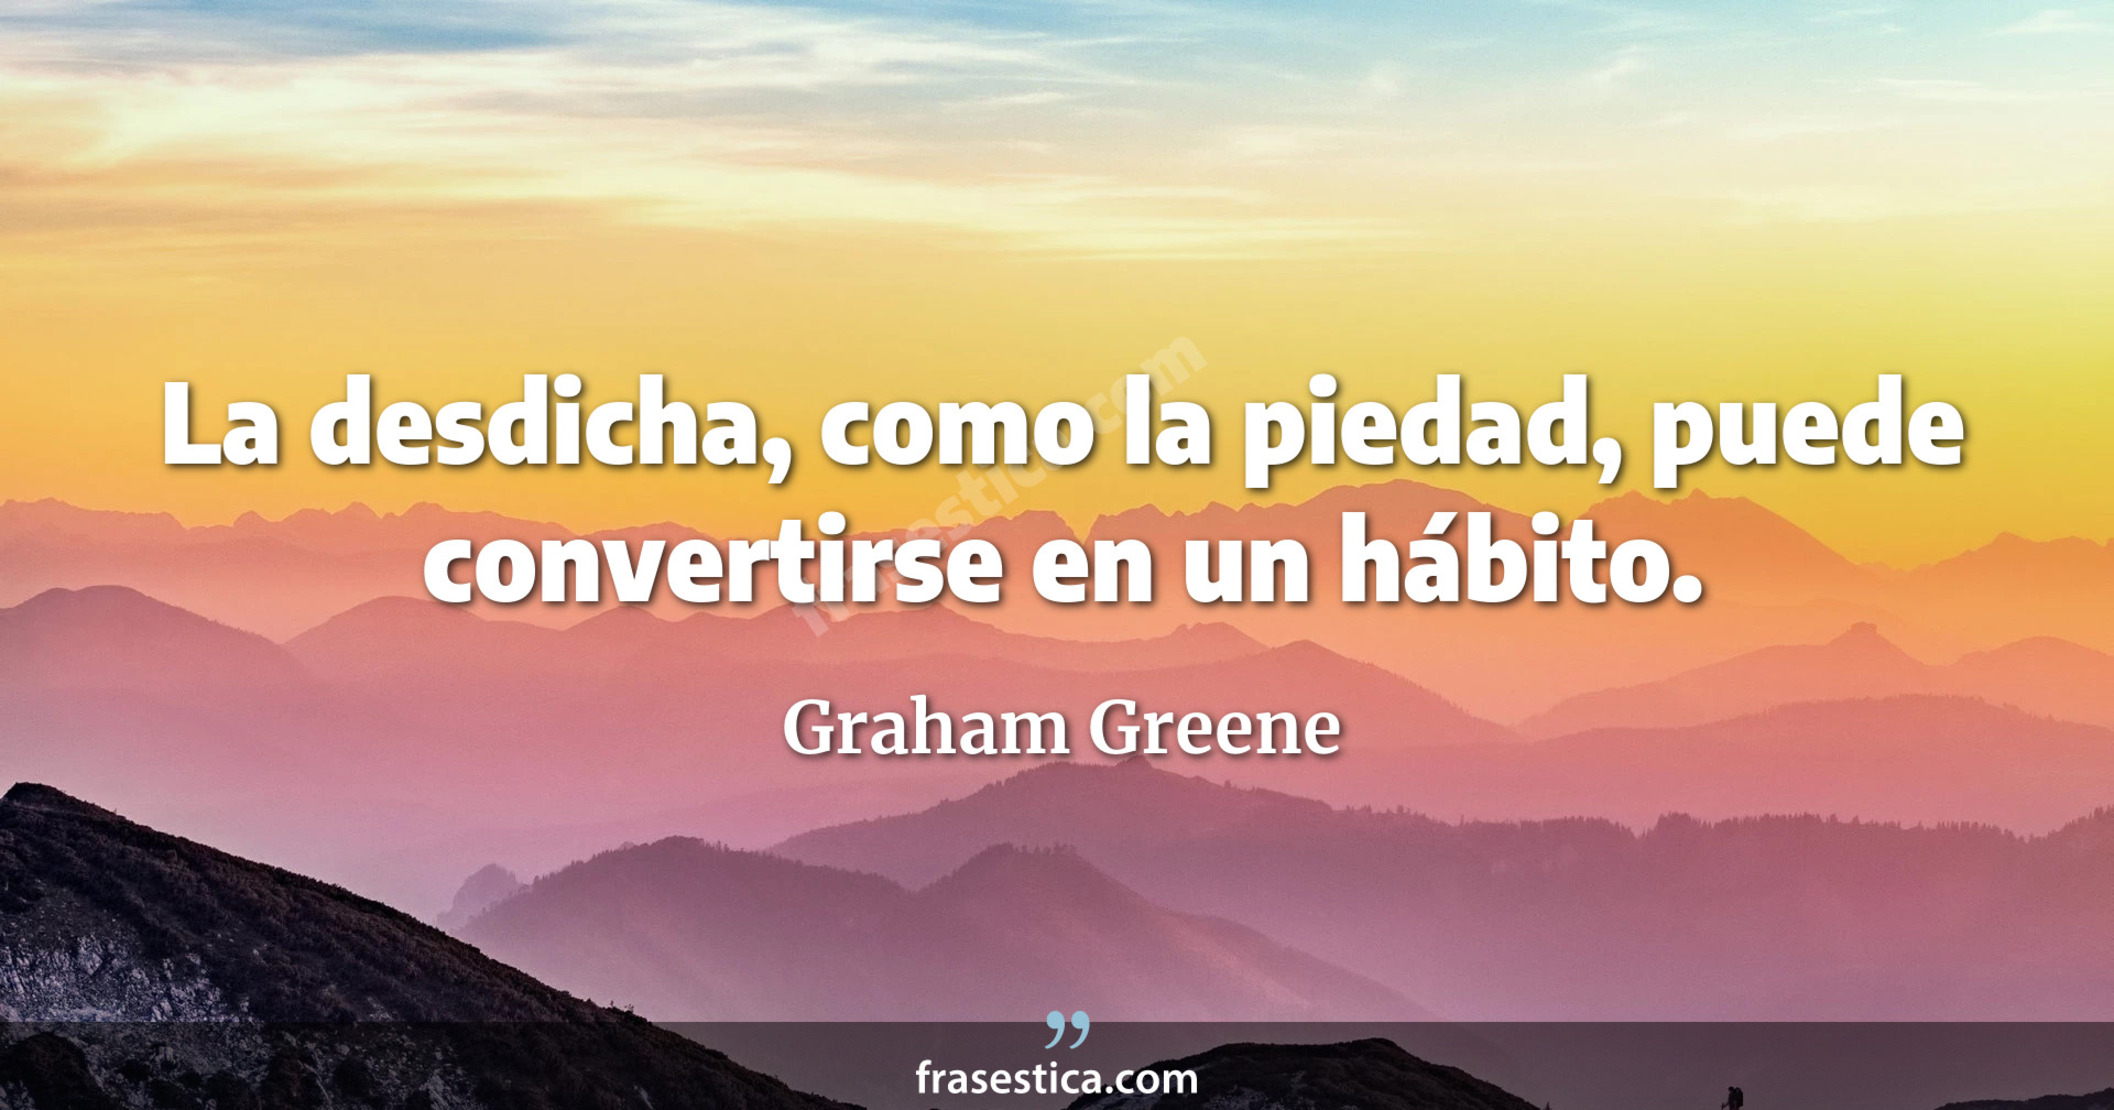 La desdicha, como la piedad, puede convertirse en un hábito. - Graham Greene